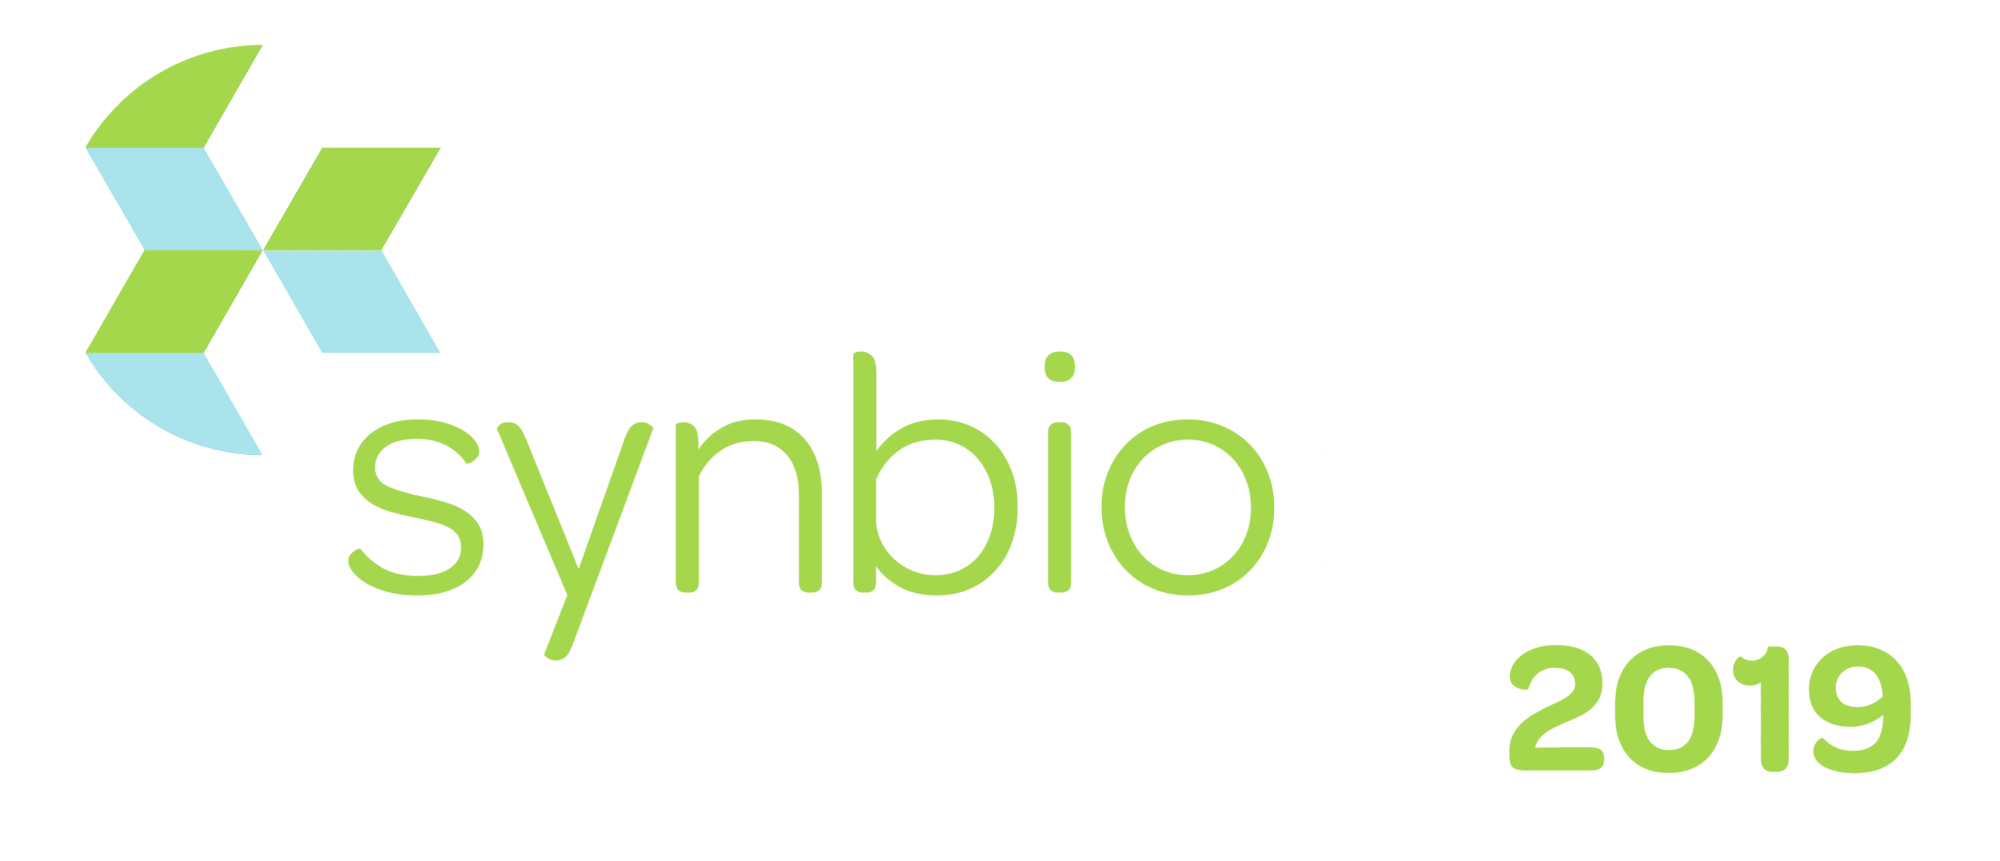 SynBioBeta 2019 Logo